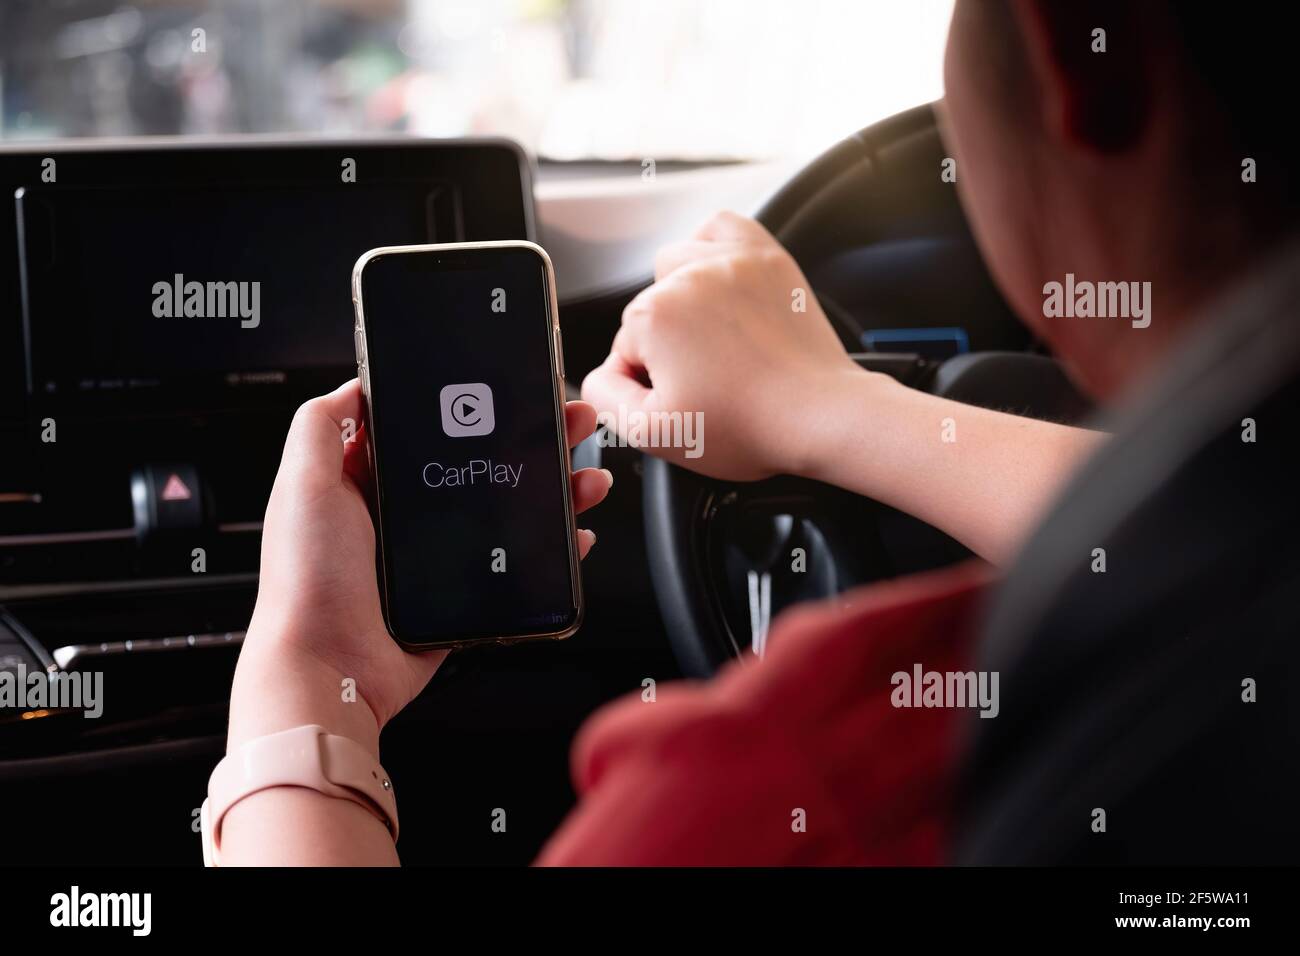 CHIANG MAI, THAILAND - 28. MÄRZ 2021: Apple CarPlay startet auf einem iPhone X, das mit einem neuen Auto verbunden ist Stockfoto